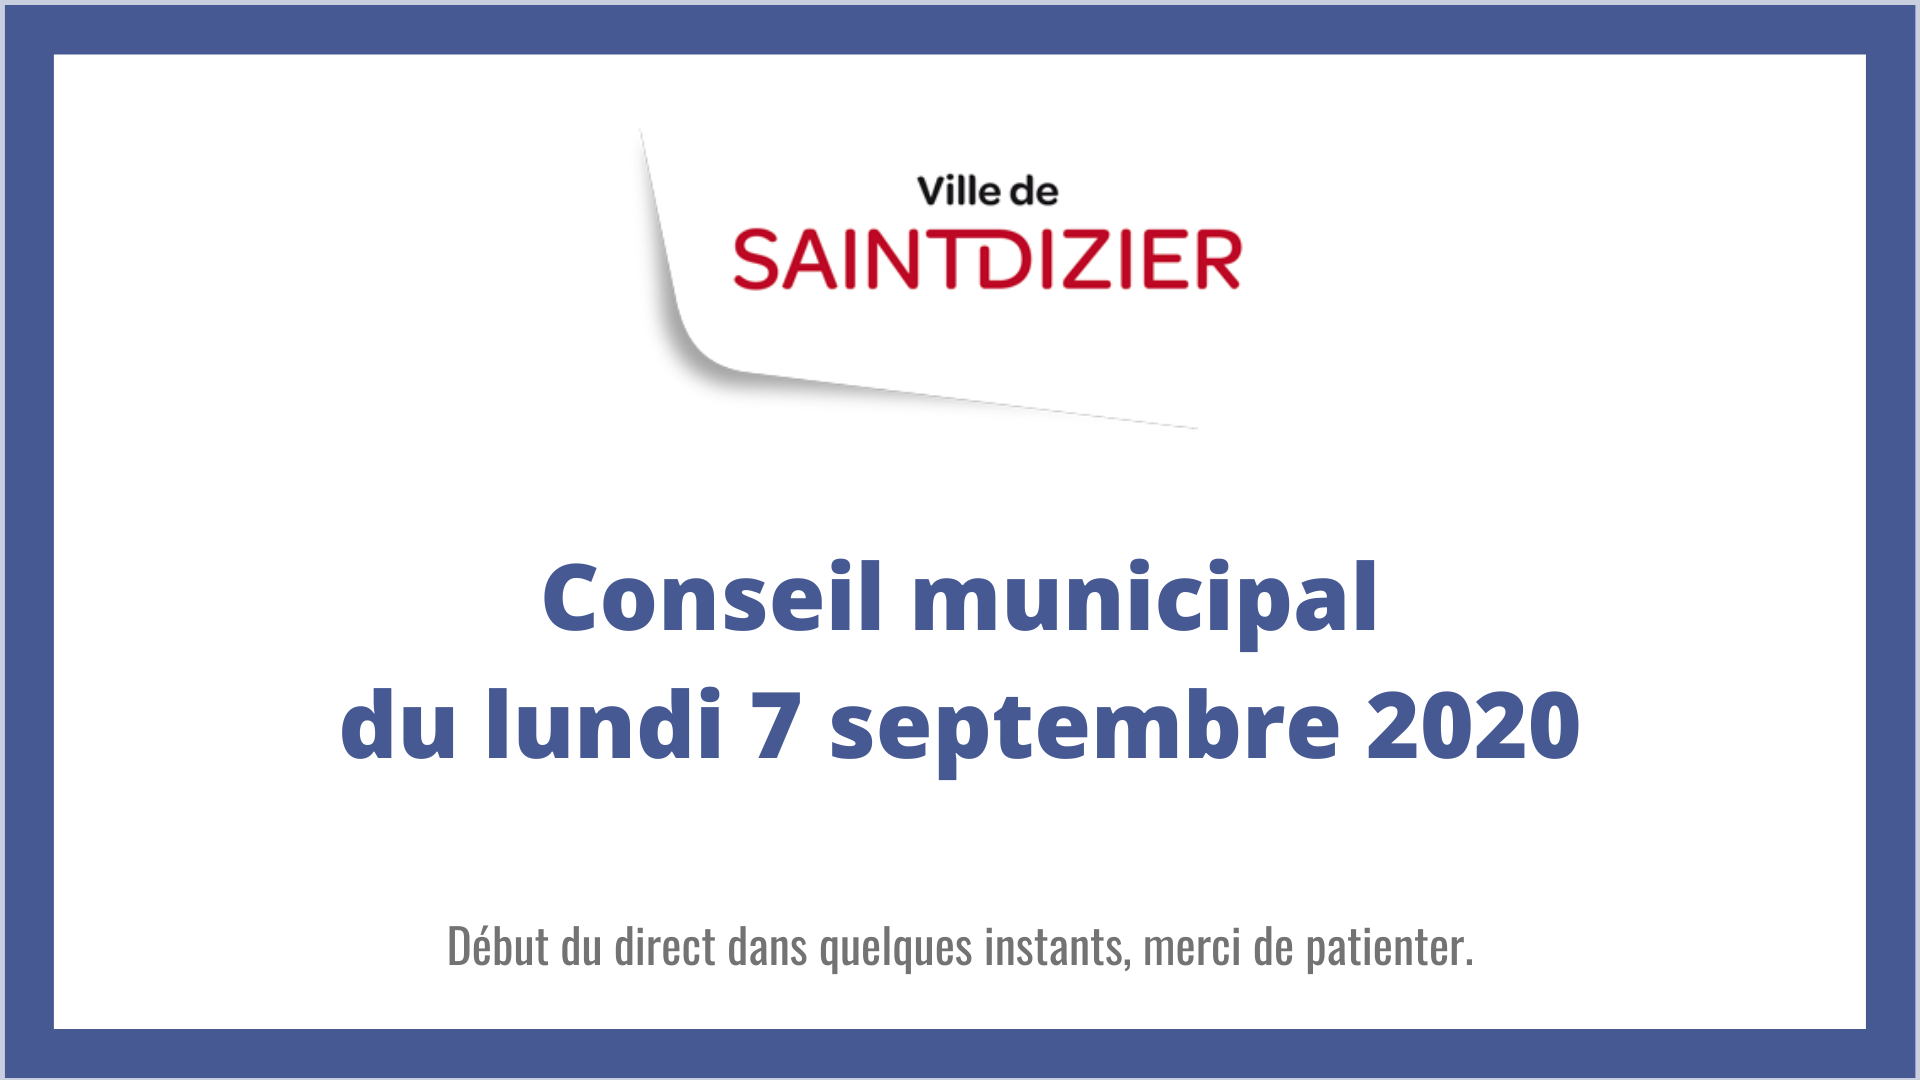 Ville de Saint-Dizier - Conseil municipal du 7 septembre 2020